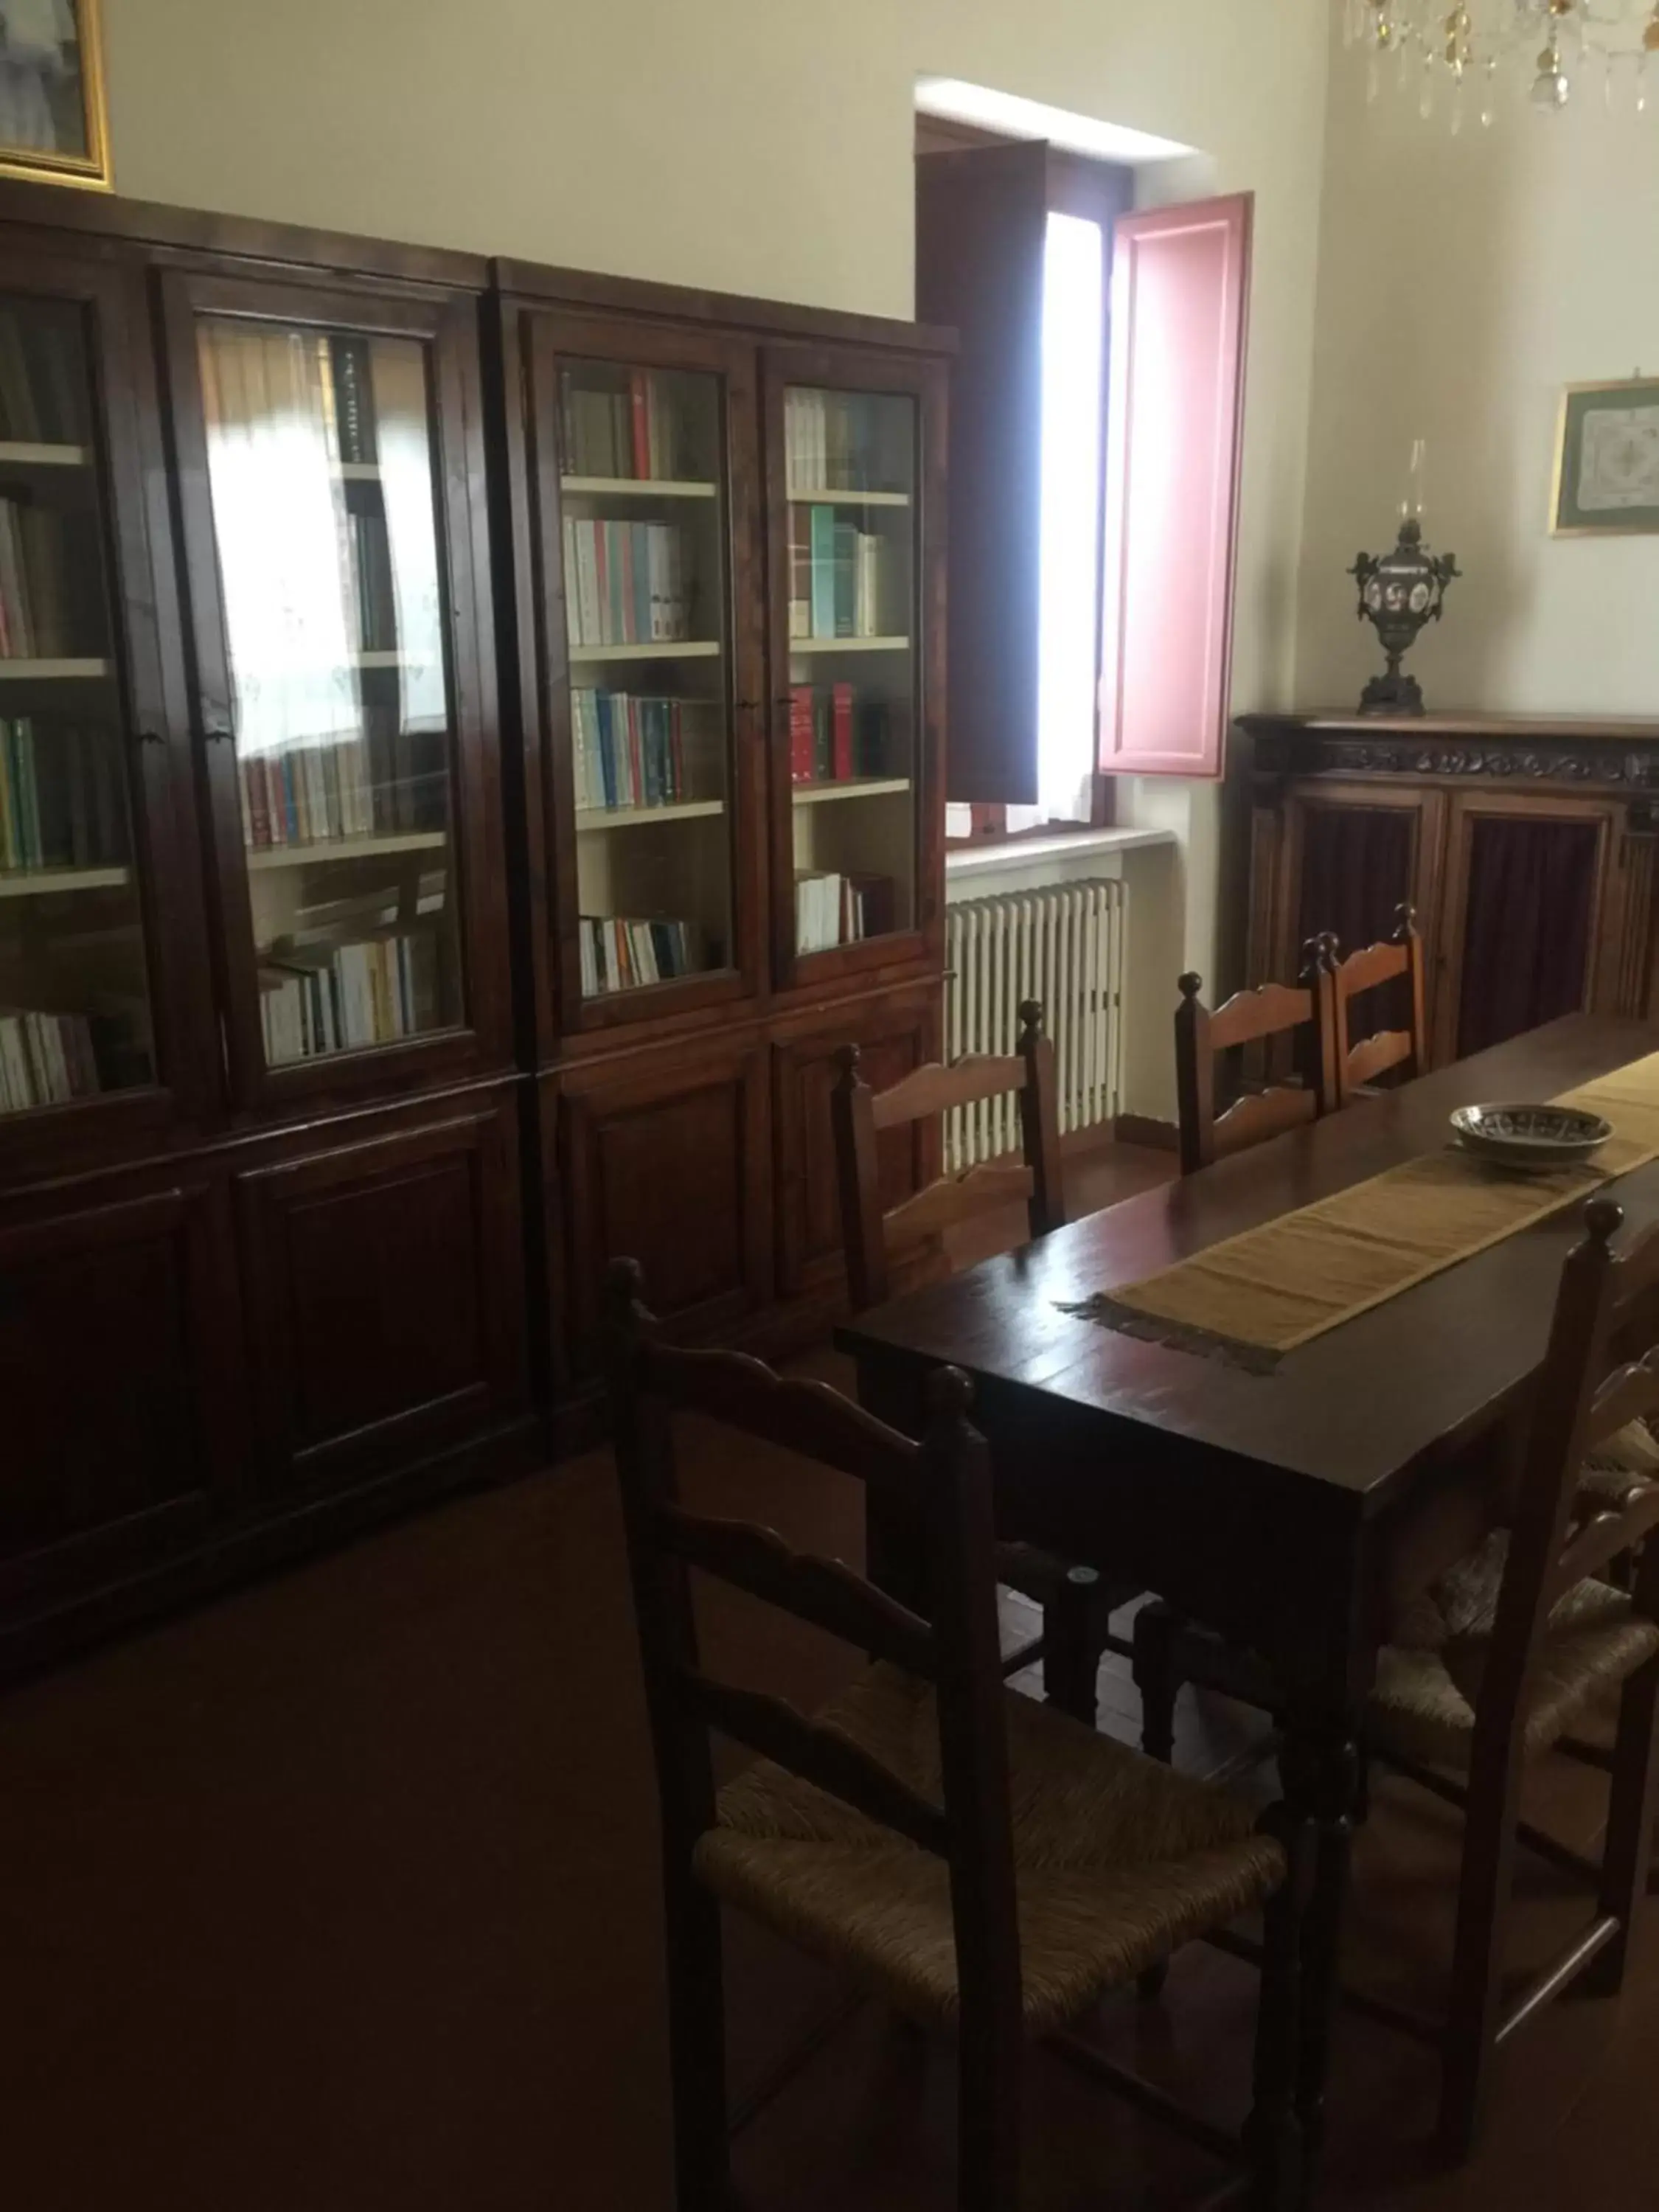 Library in Monastero SS. Annunziata